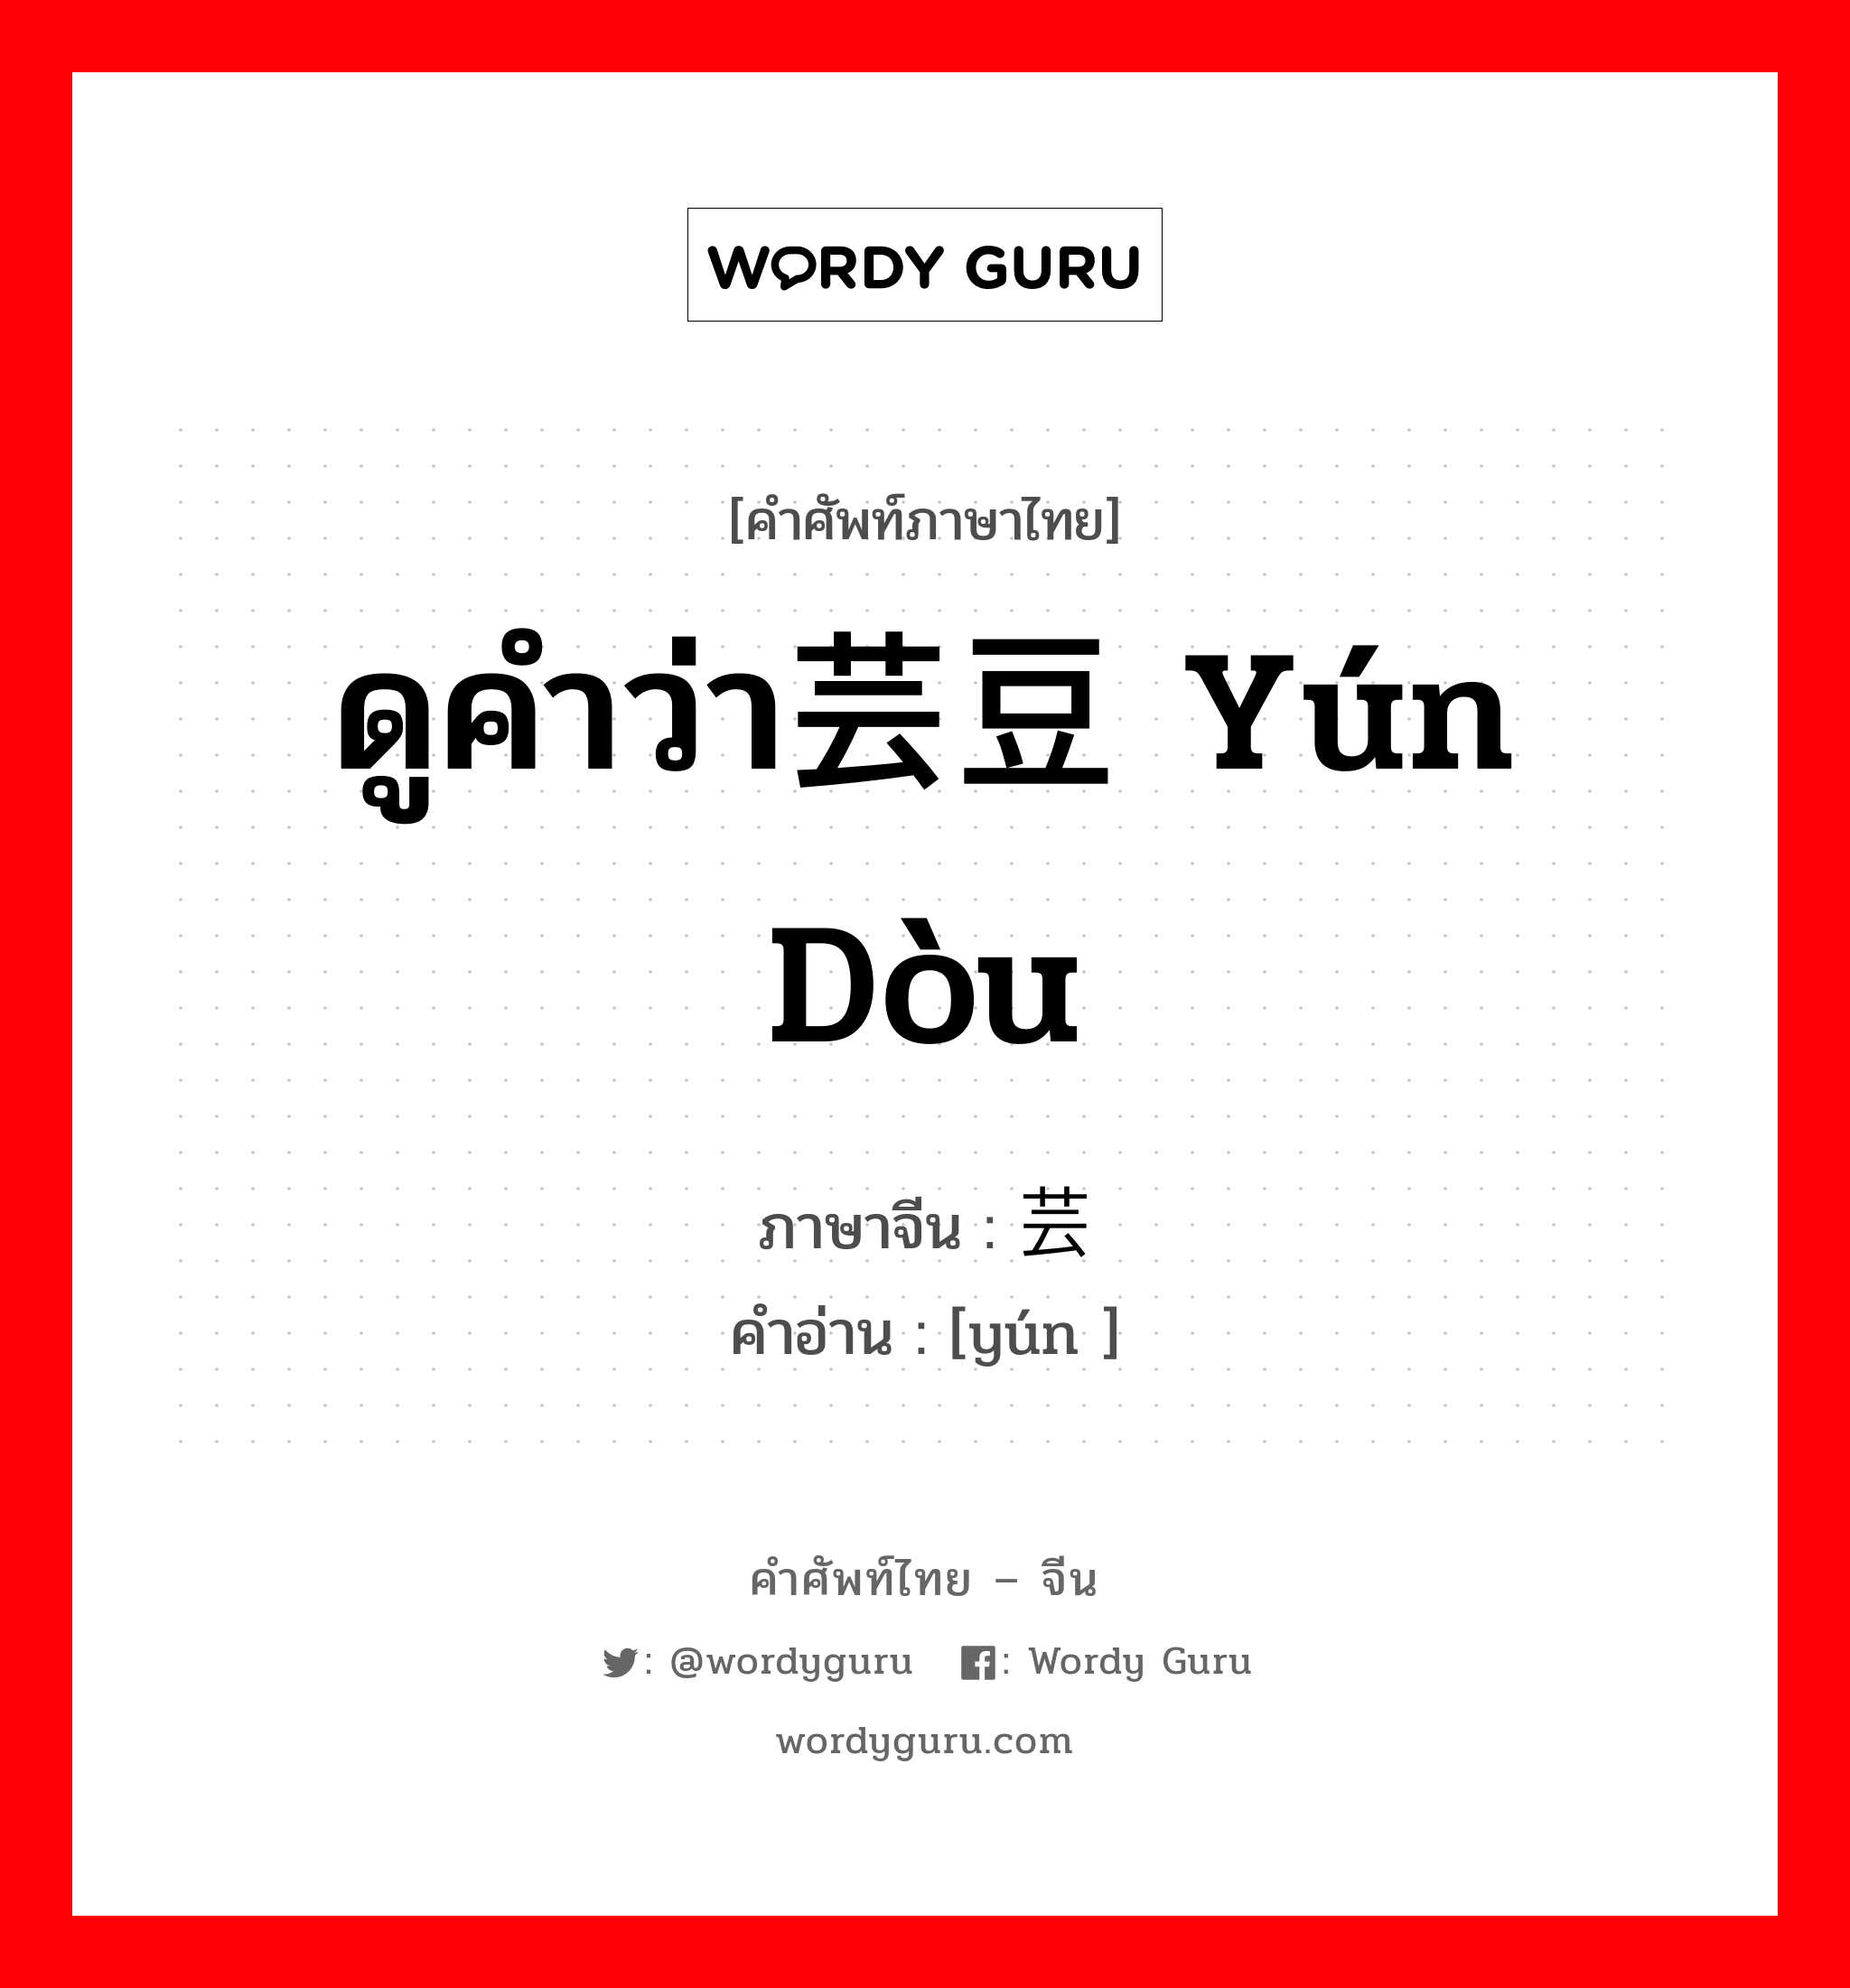 ดูคำว่า芸豆 yún dòu ภาษาจีนคืออะไร, คำศัพท์ภาษาไทย - จีน ดูคำว่า芸豆 yún dòu ภาษาจีน 芸 คำอ่าน [yún ]